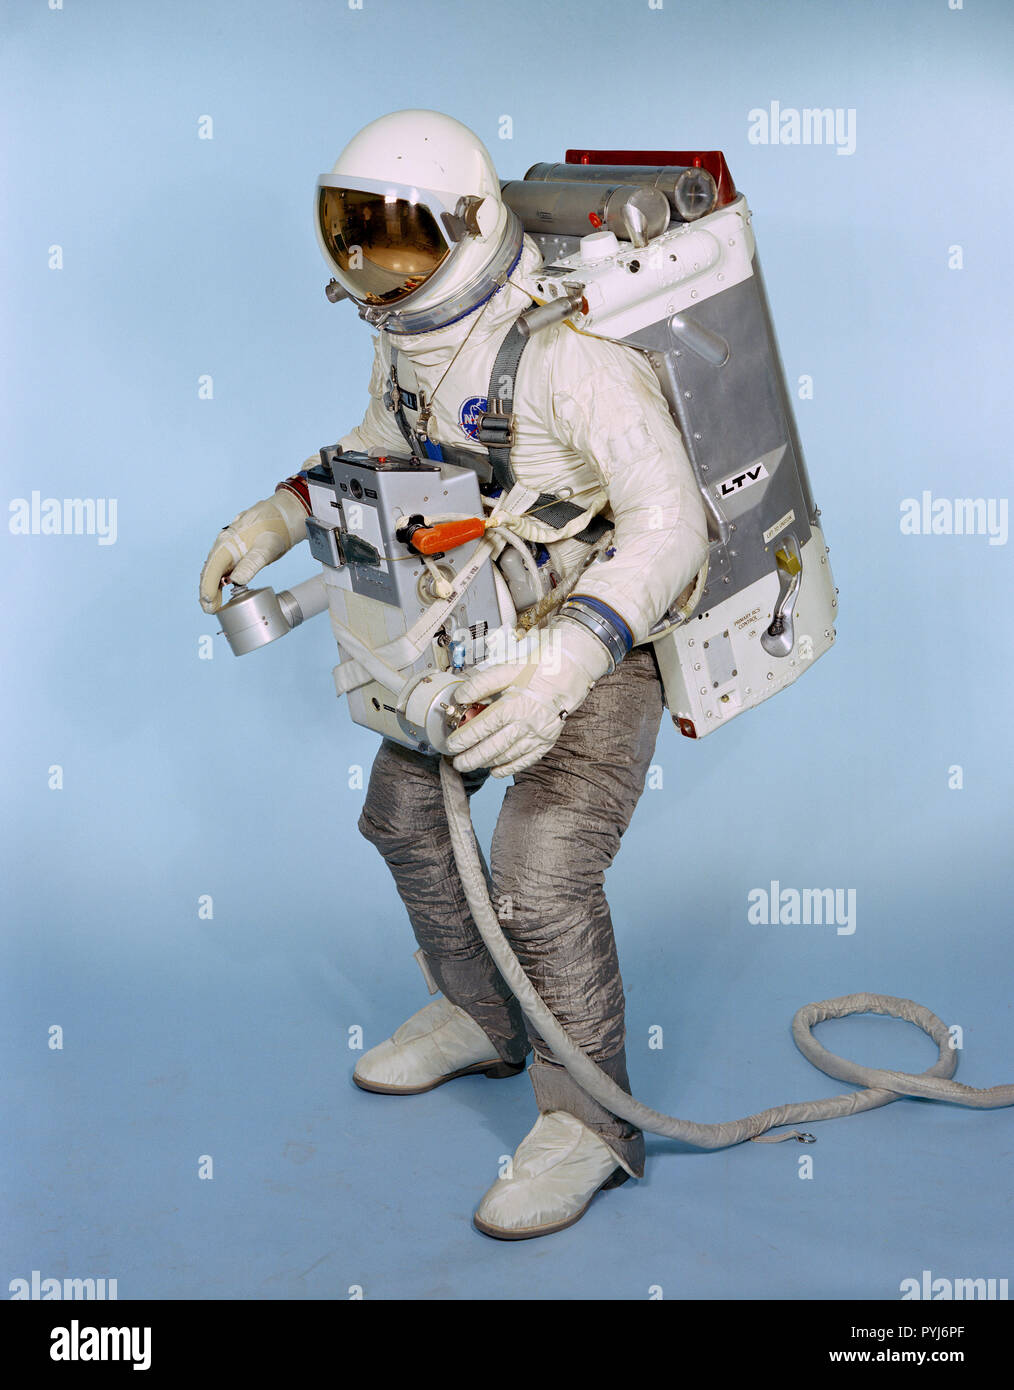 (Maggio 1966) --- i soggetti di test Fred Spross, Crew Systems Division, indossa un astronauta unità di manovra (UMA). Il Gemini spacesuit, AMU nello zaino e il Extravehicular Life Support System chest pack comprende l'AMU, un sistema che è essenzialmente una miniatura del veicolo spaziale con equipaggio. Foto Stock